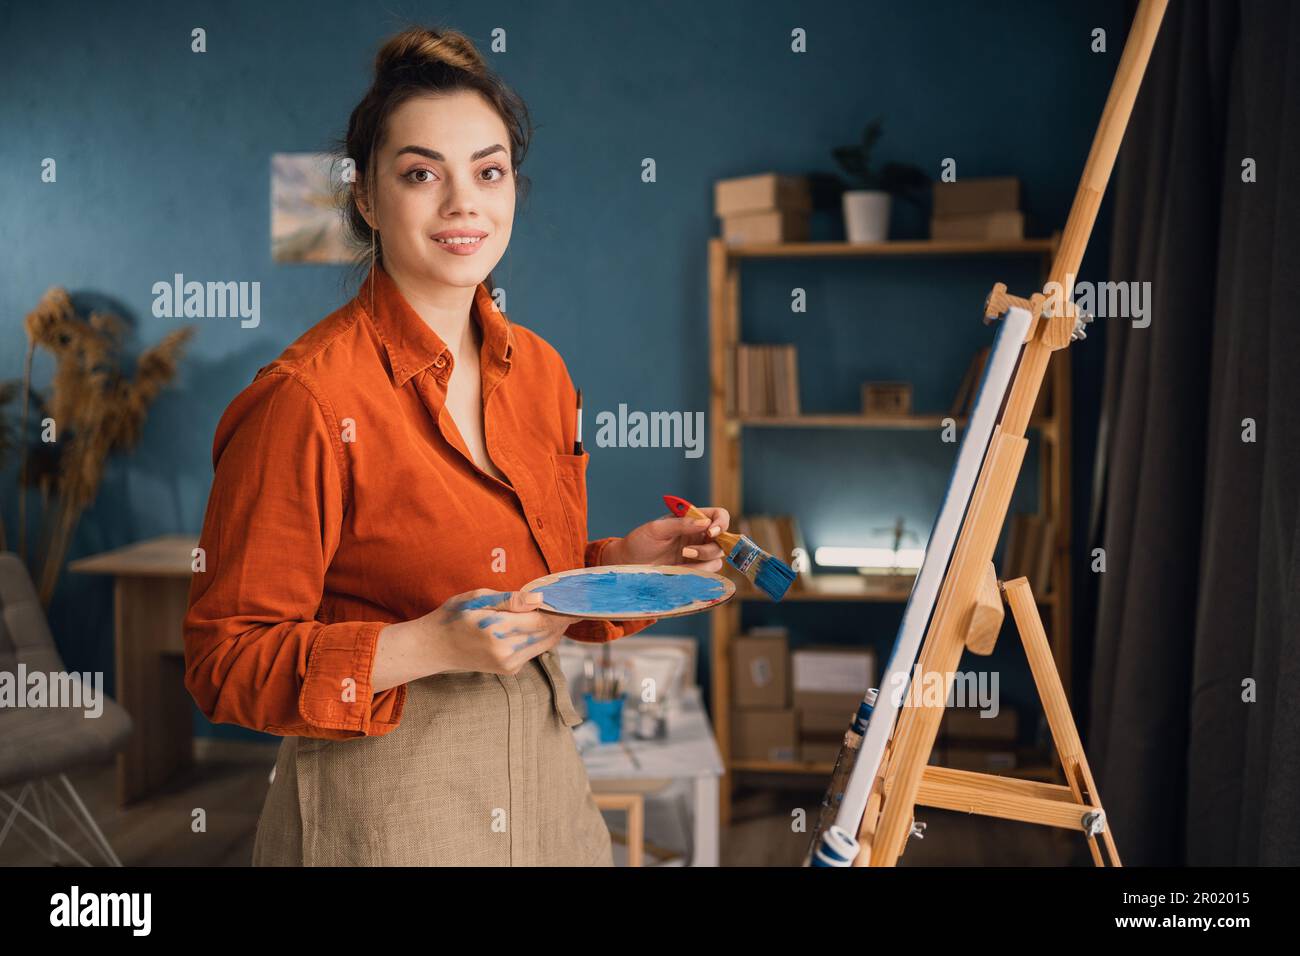 una giovane studentessa è impegnata in uno studio d'arte a casa, imparando a dipingere paesaggi, cercando di mescolare diversi acquerelli su cartone. A. Foto Stock